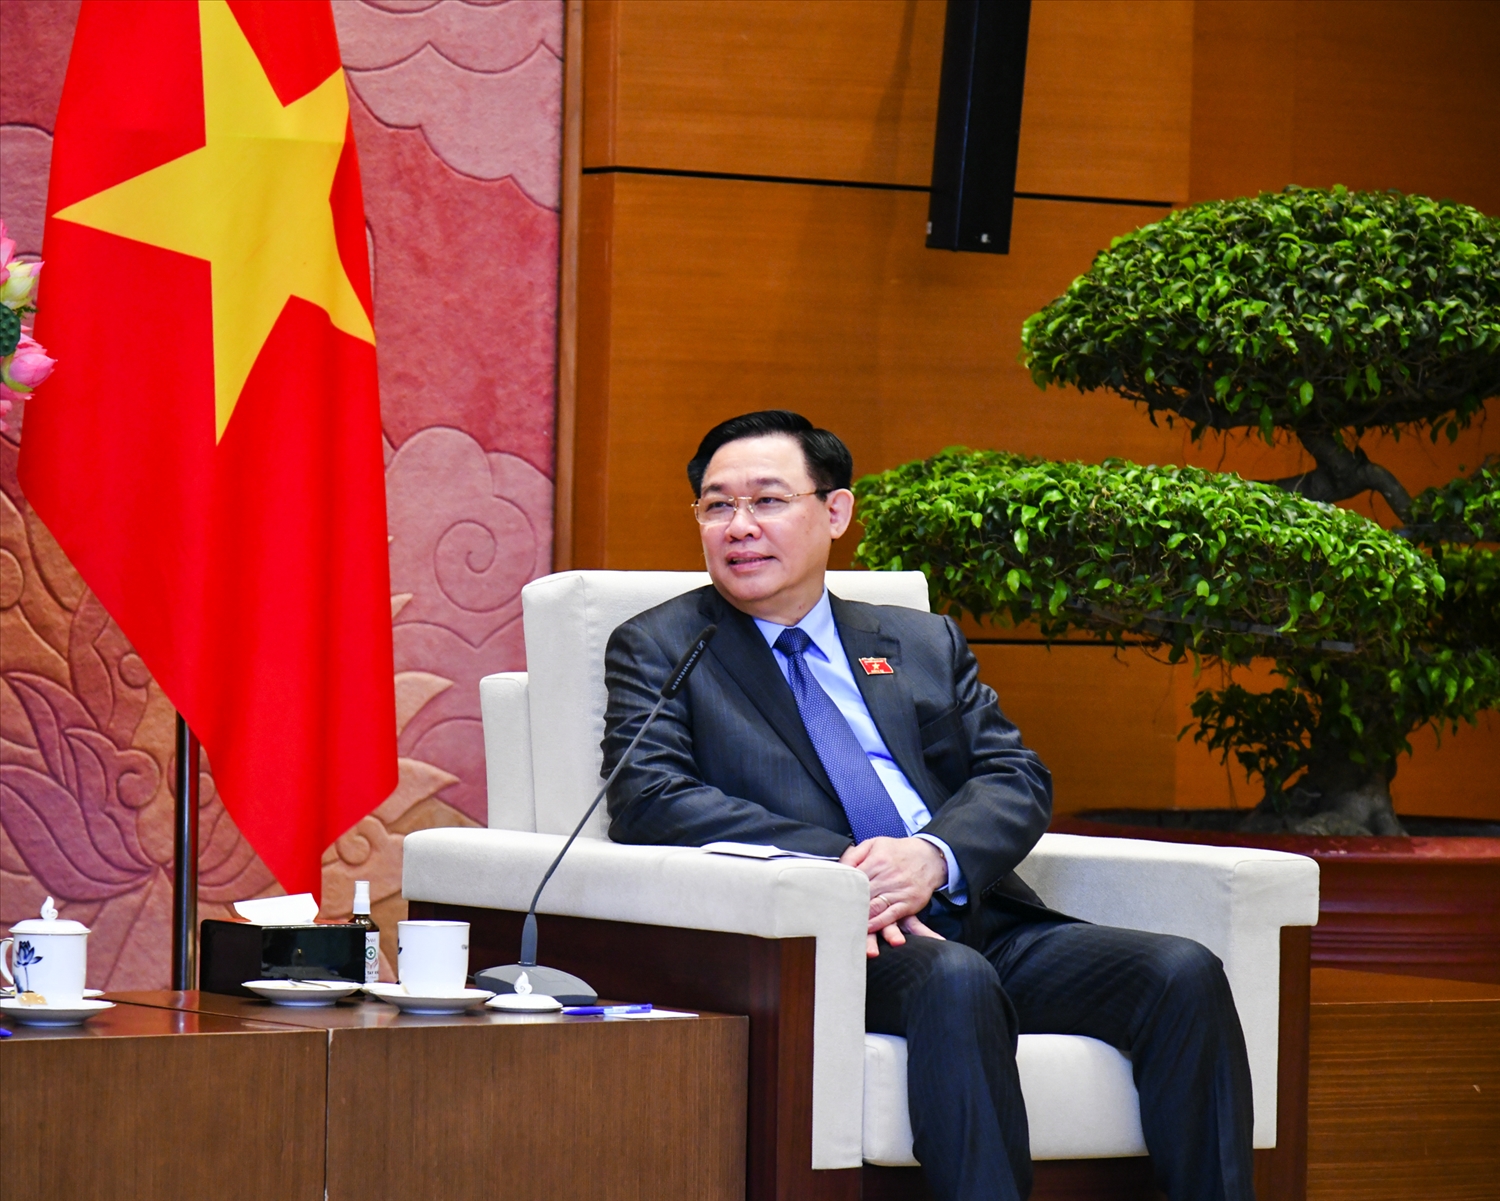 Chủ tịch Quốc hội tin tưởng rằng với những tình cảm tốt đẹp dành cho Việt Nam và bề dày kinh nghiệm công tác ngoại giao, Đại sứ Cuba sẽ có nhiều đóng góp quan trọng, thúc đẩy mạnh mẽ hơn nữa quan hệ giữa Việt Nam với Cuba